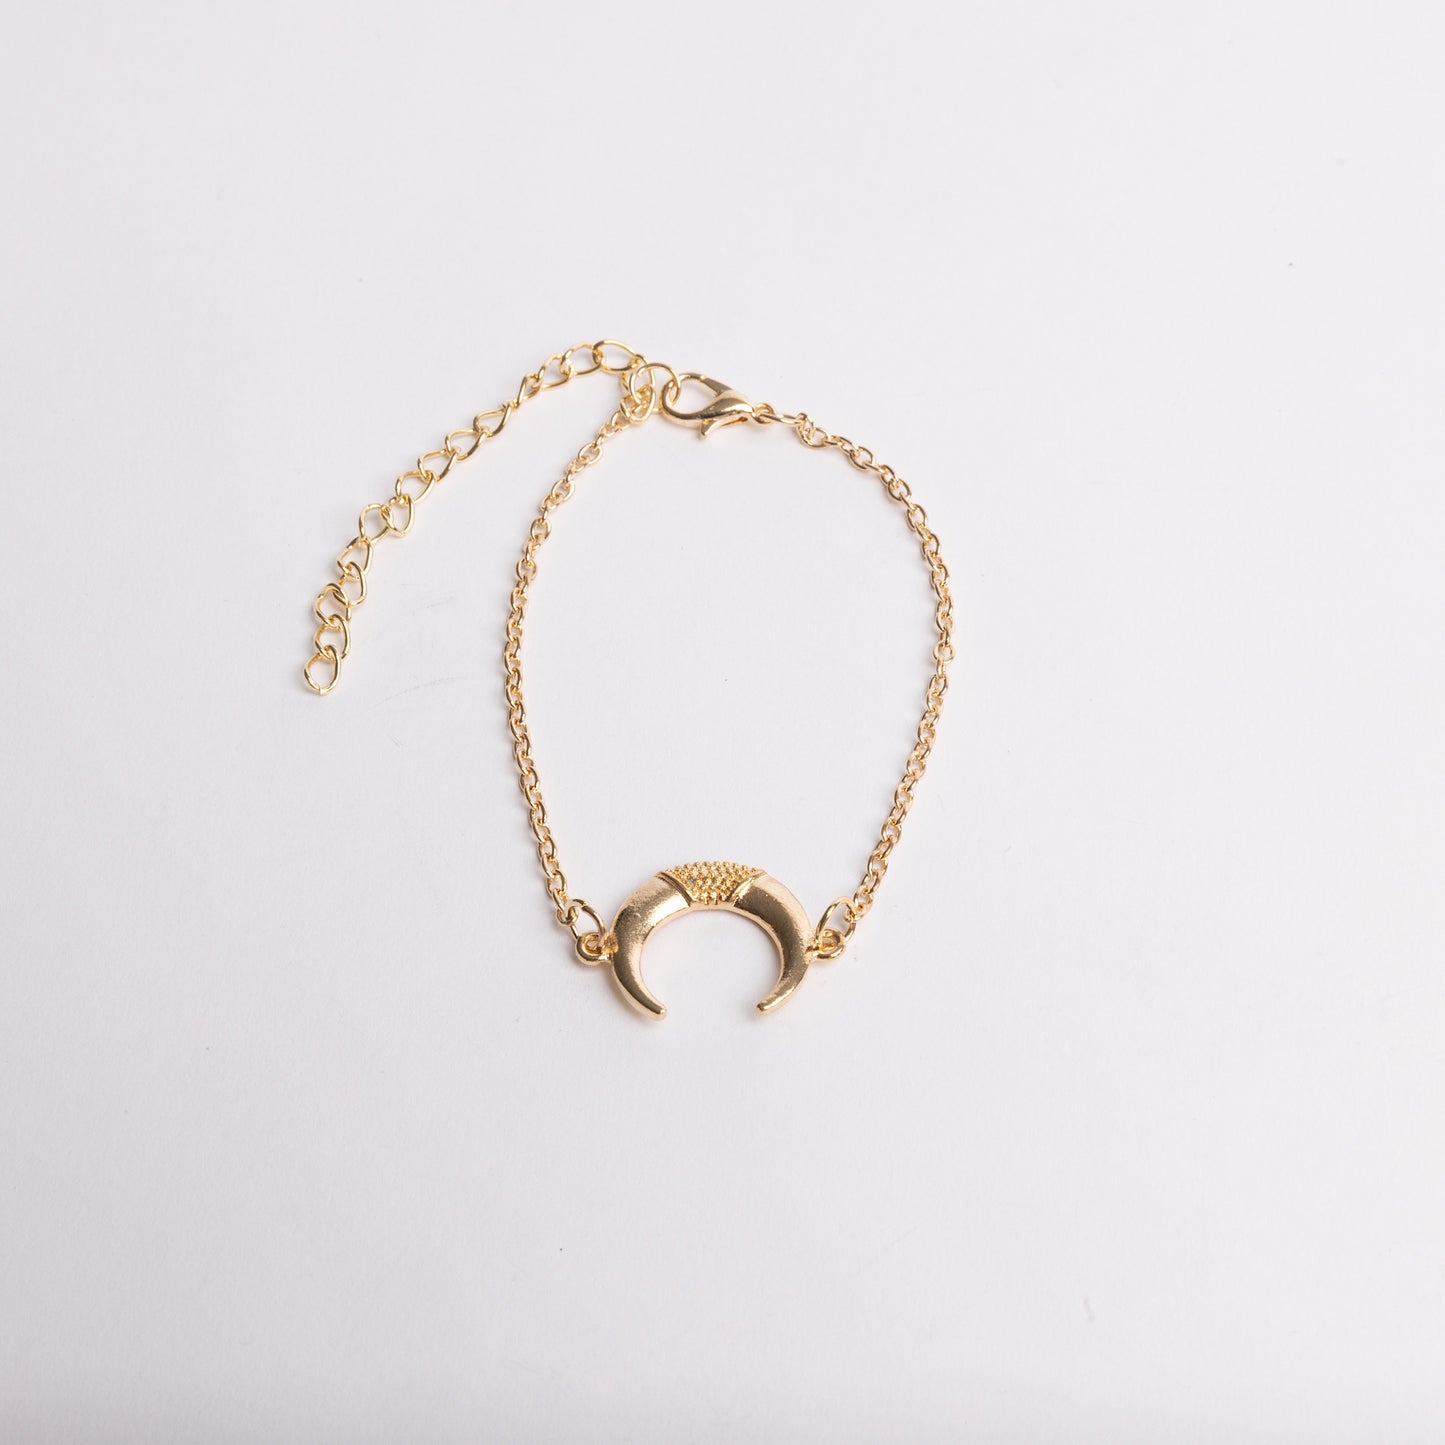 Seashore Shell Bracelet Set (4pc.)